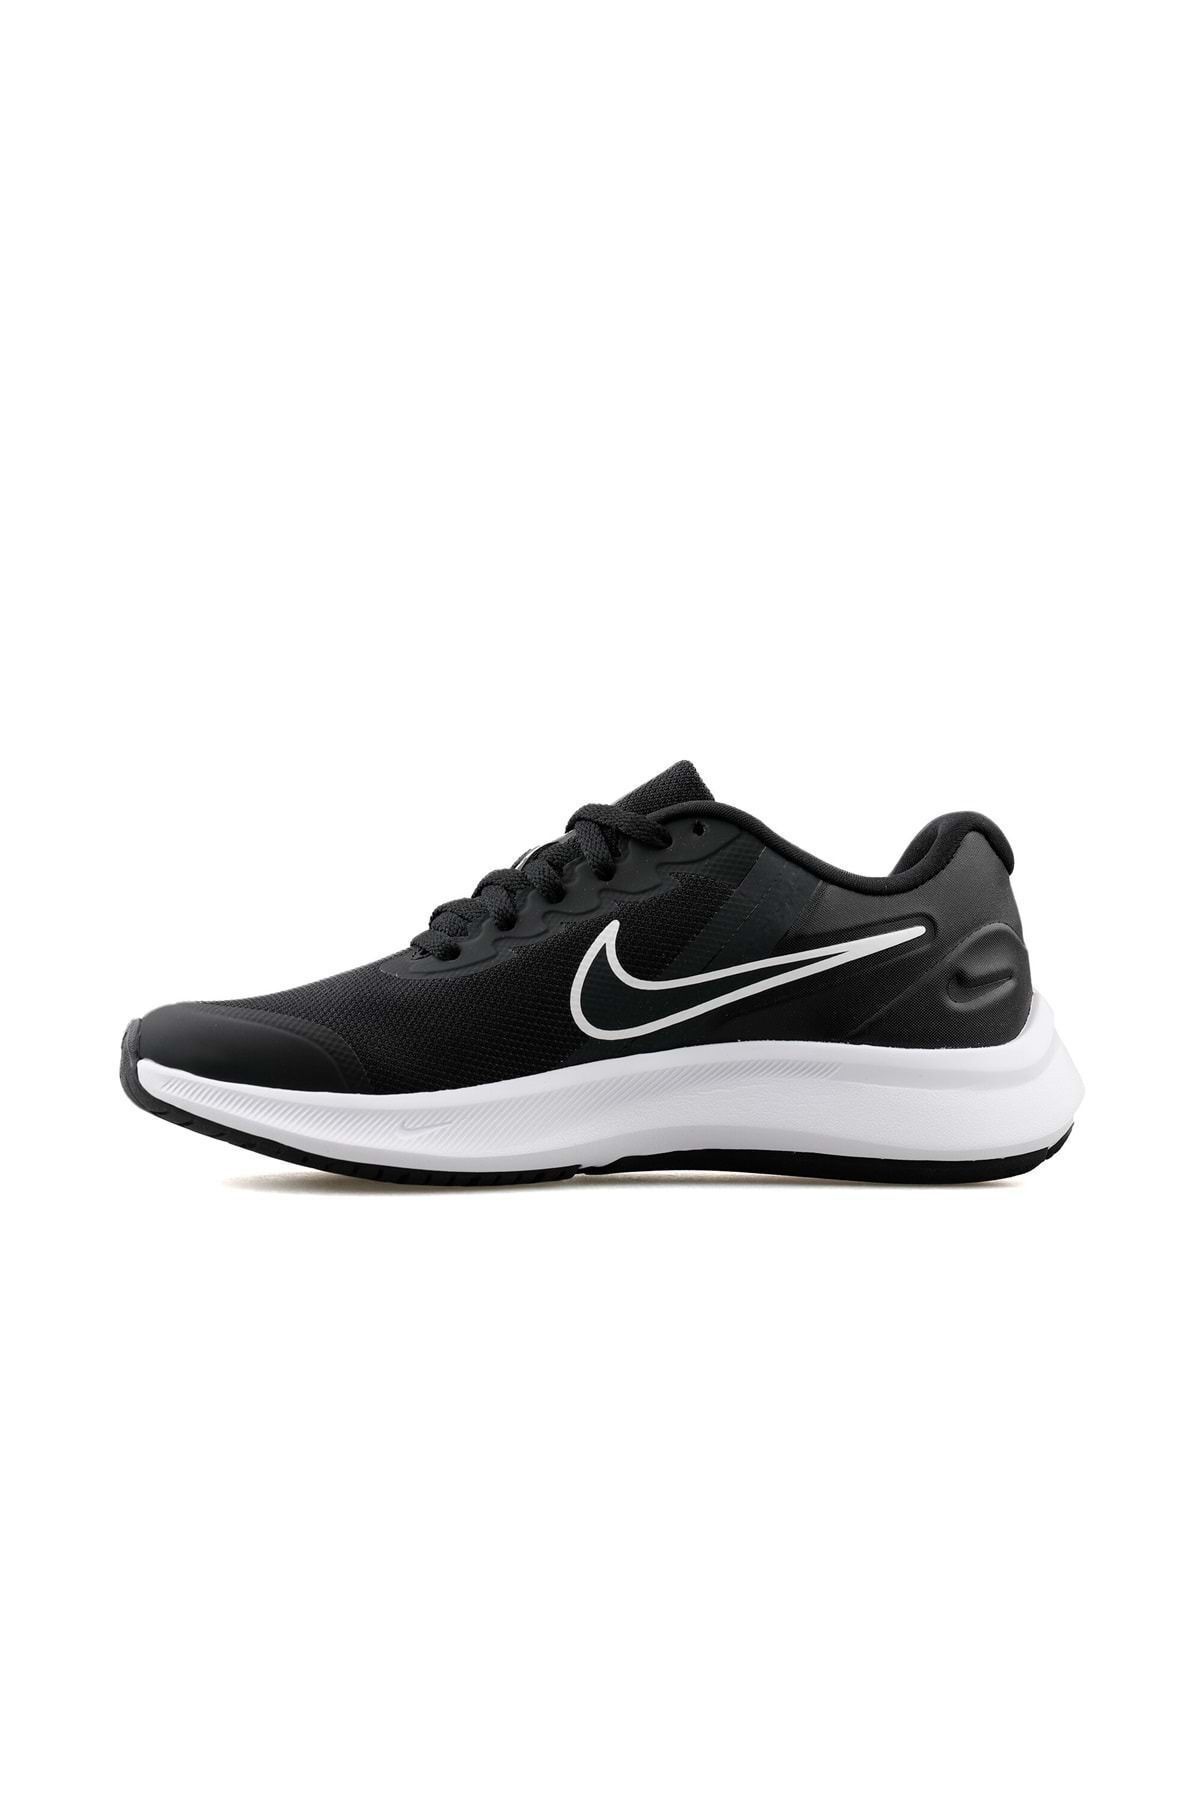 Nike Star Runner 3 Sneakers Da2776-003